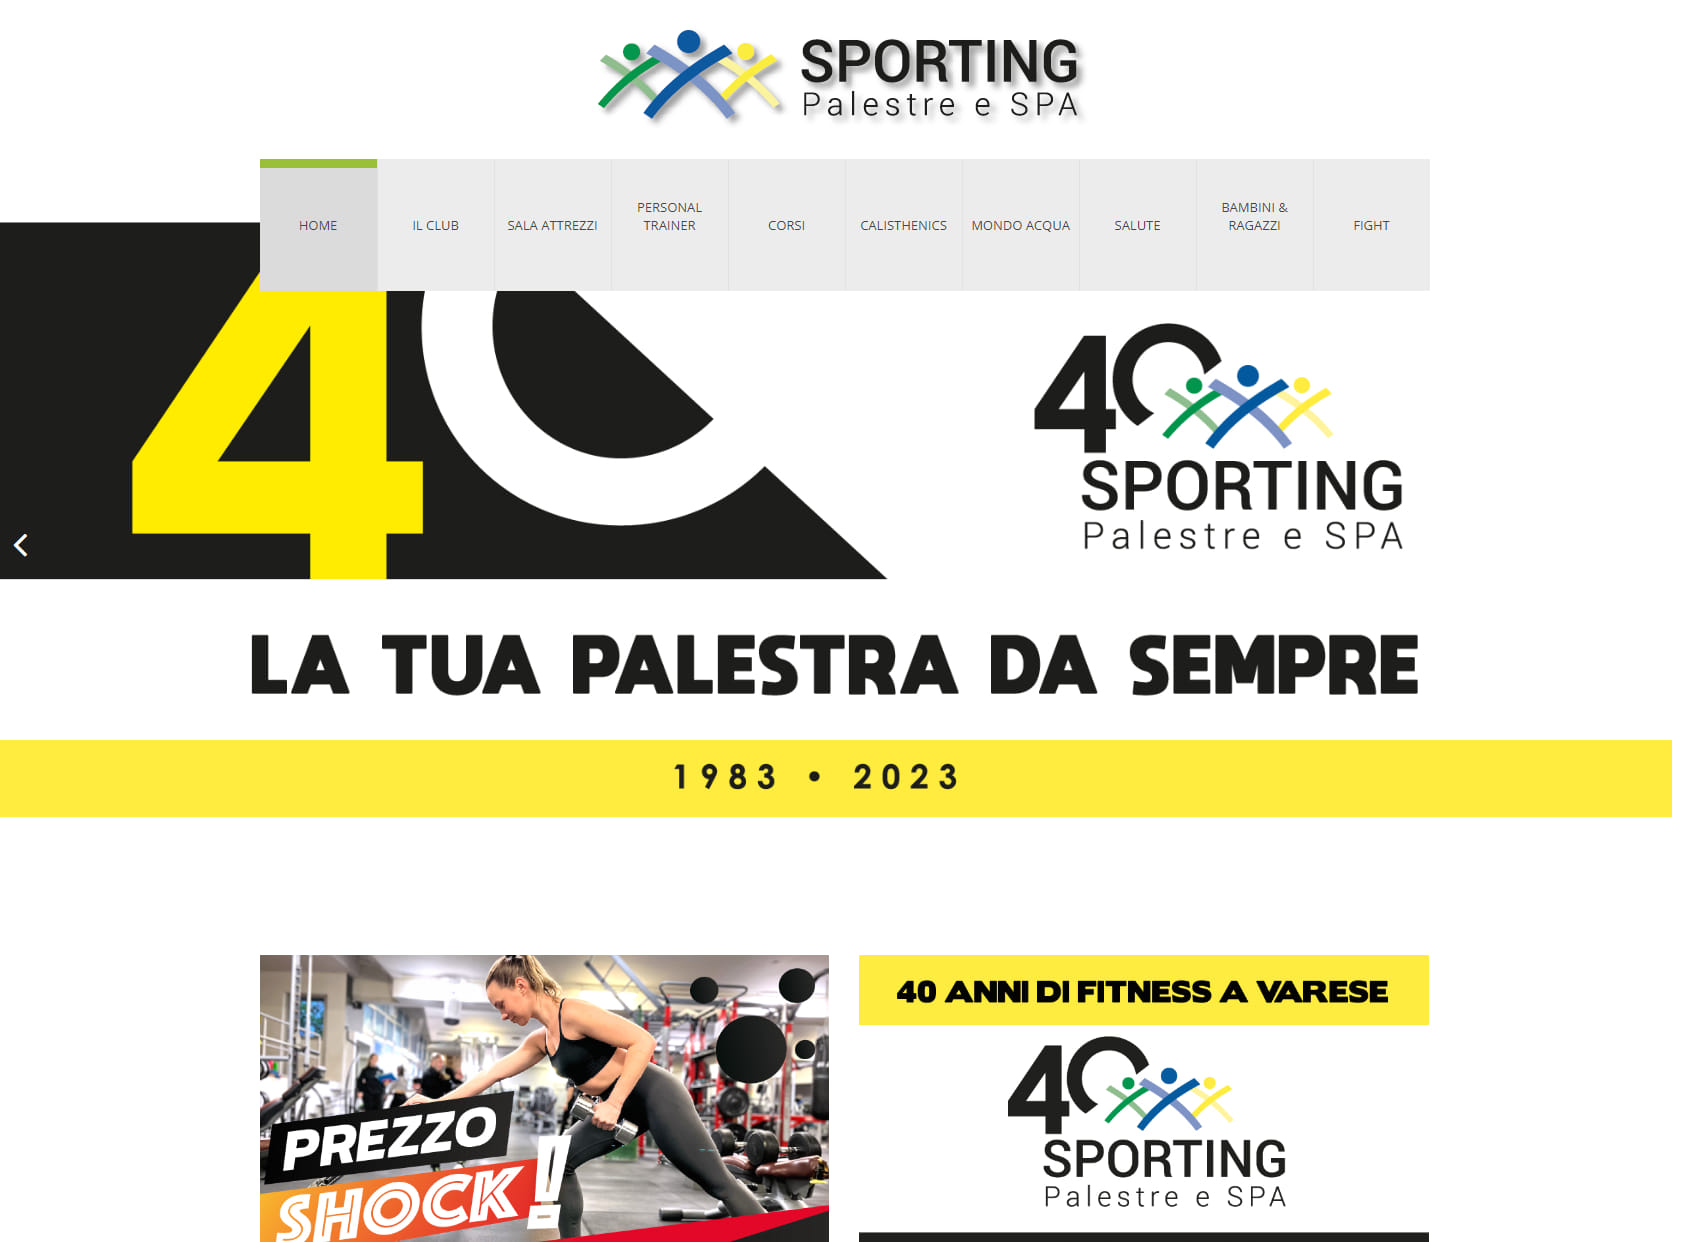 Sporting Palestra & SPA ssdrl